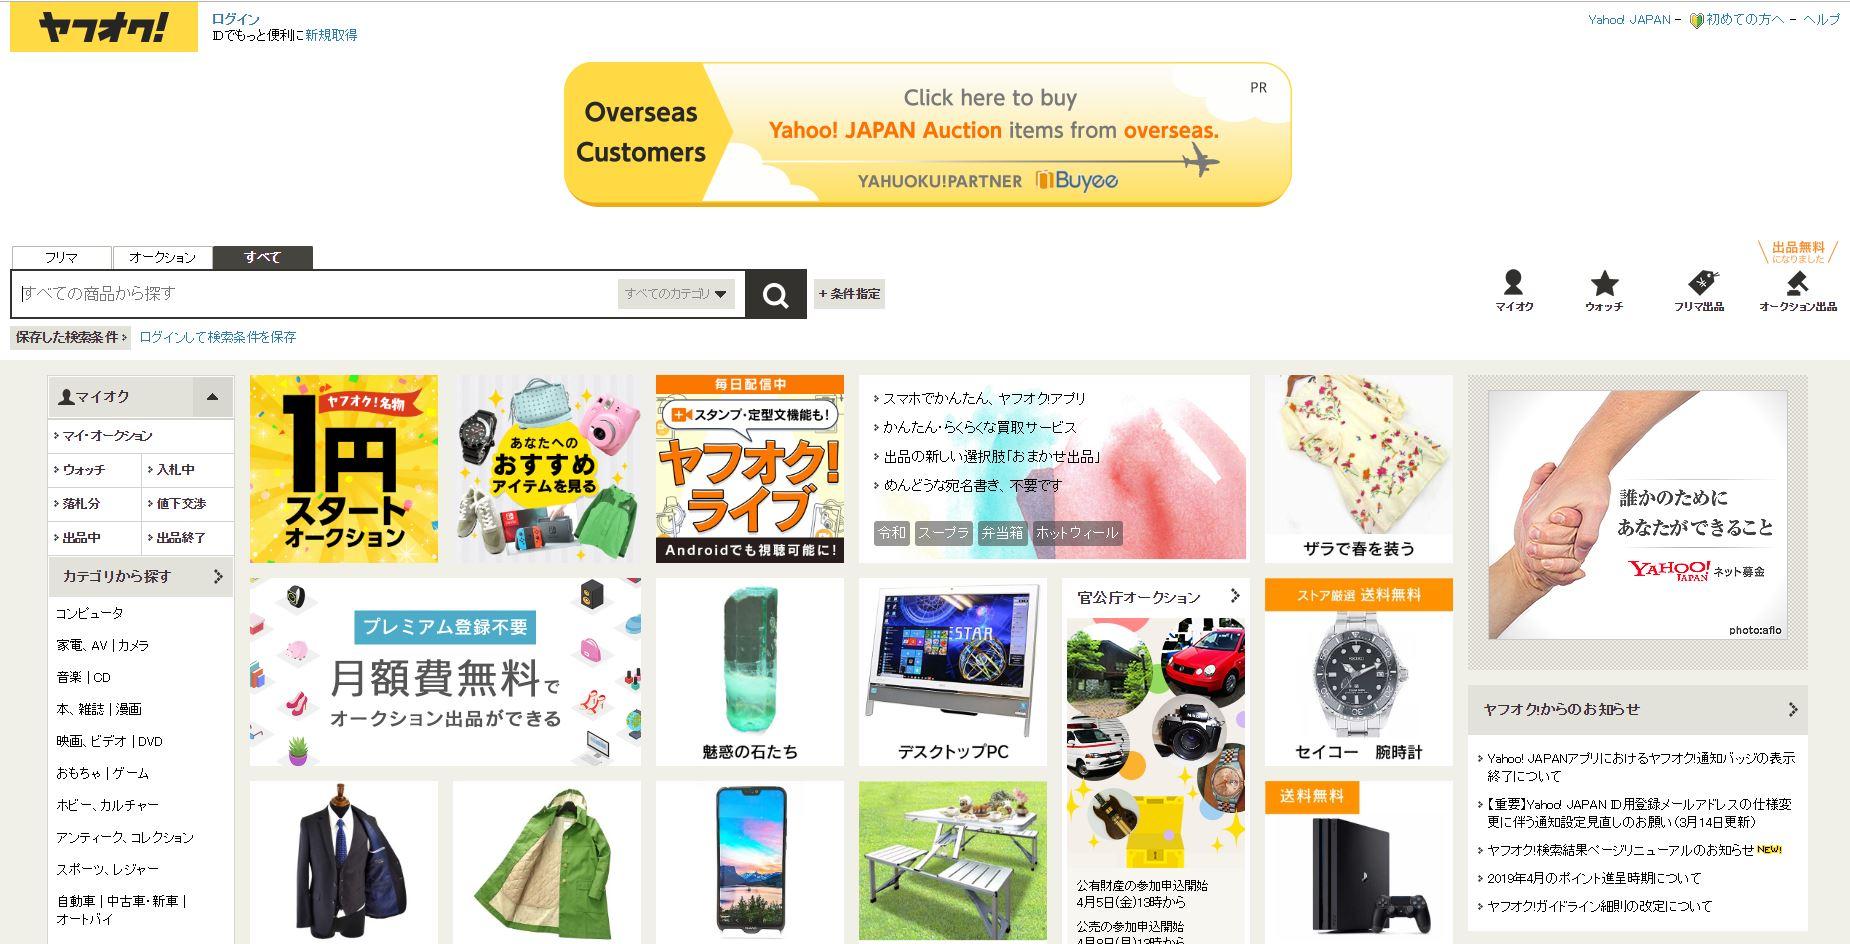 3 website mua hàng Nhật bãi uy tín hàng đầu Nhật Bản